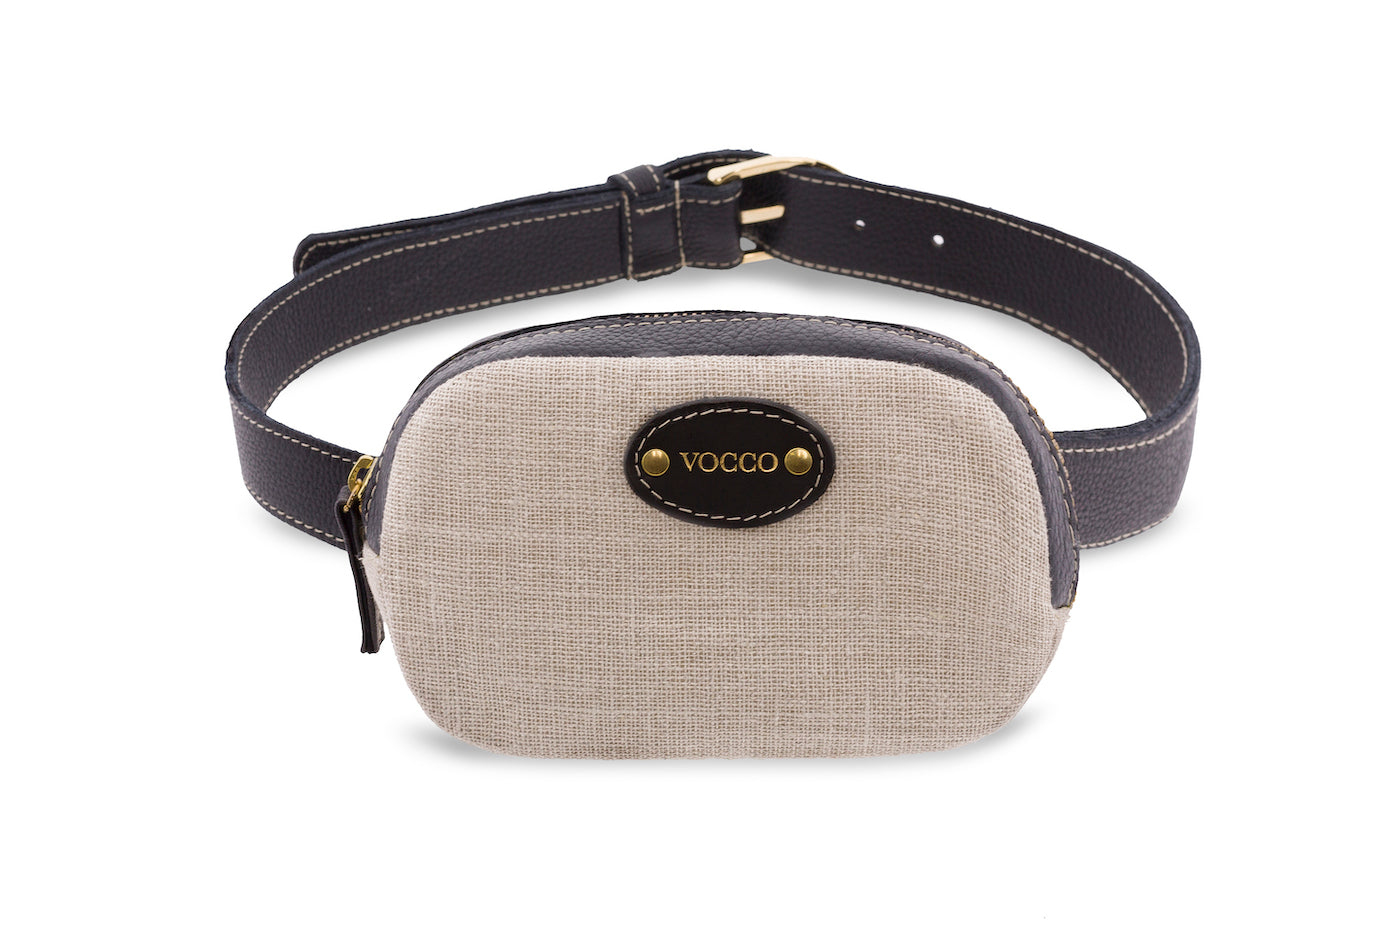 Vocco Belt Bag Black - Vocco